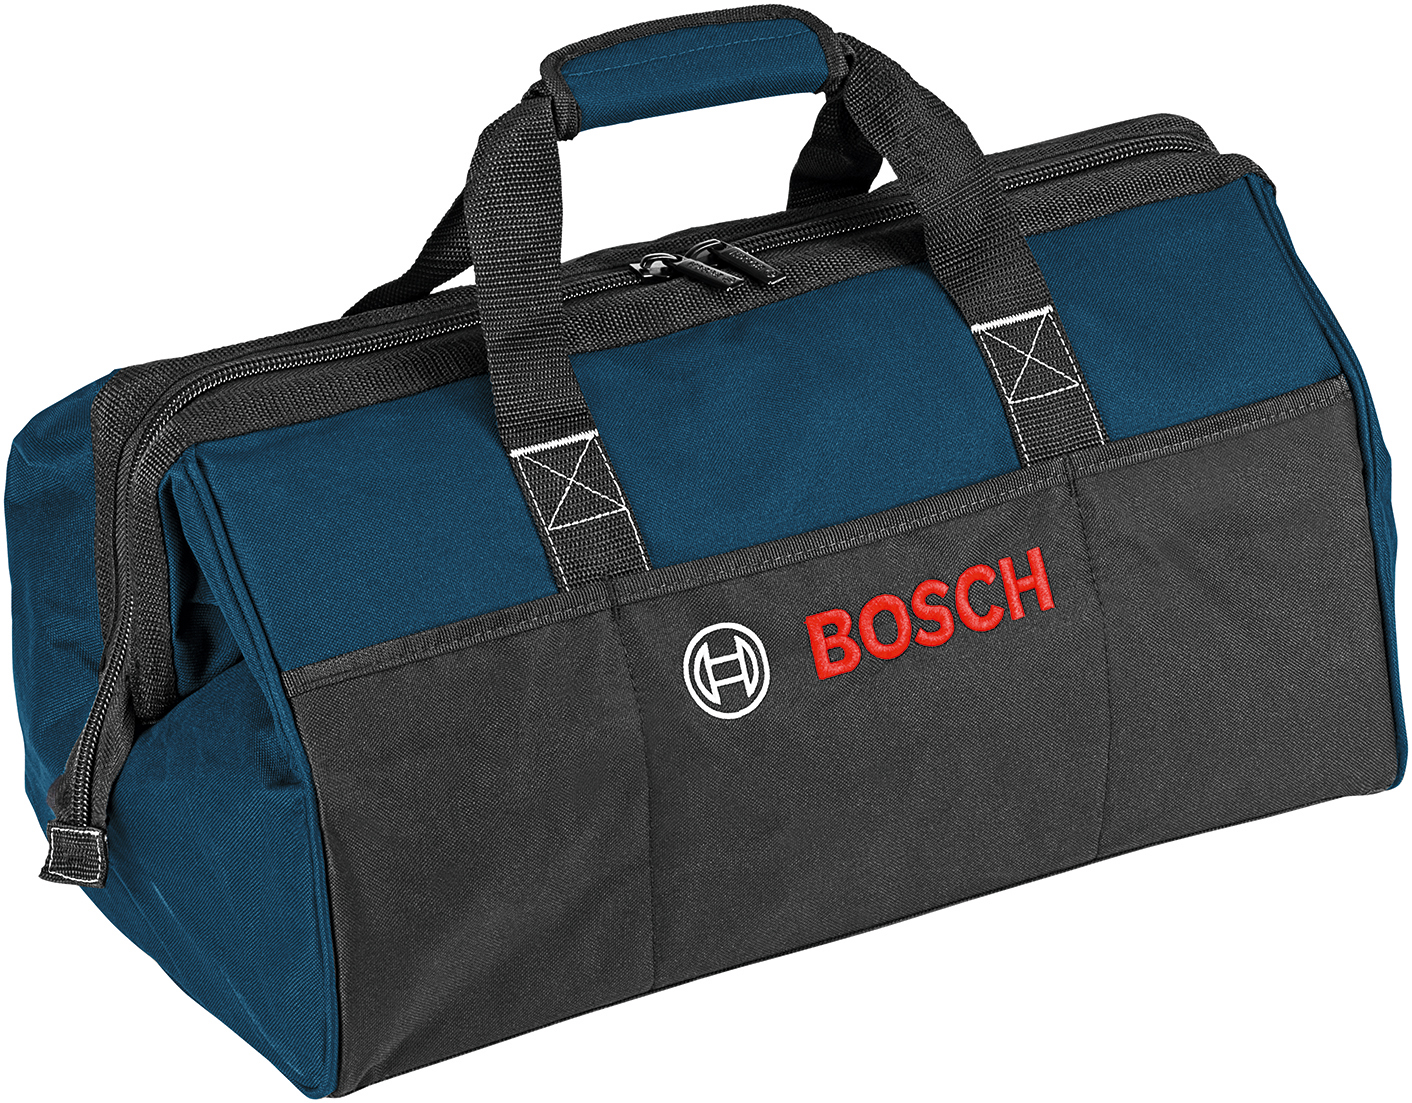 Taška na náradie Bosch PT Tool Bag 1619BZ0100